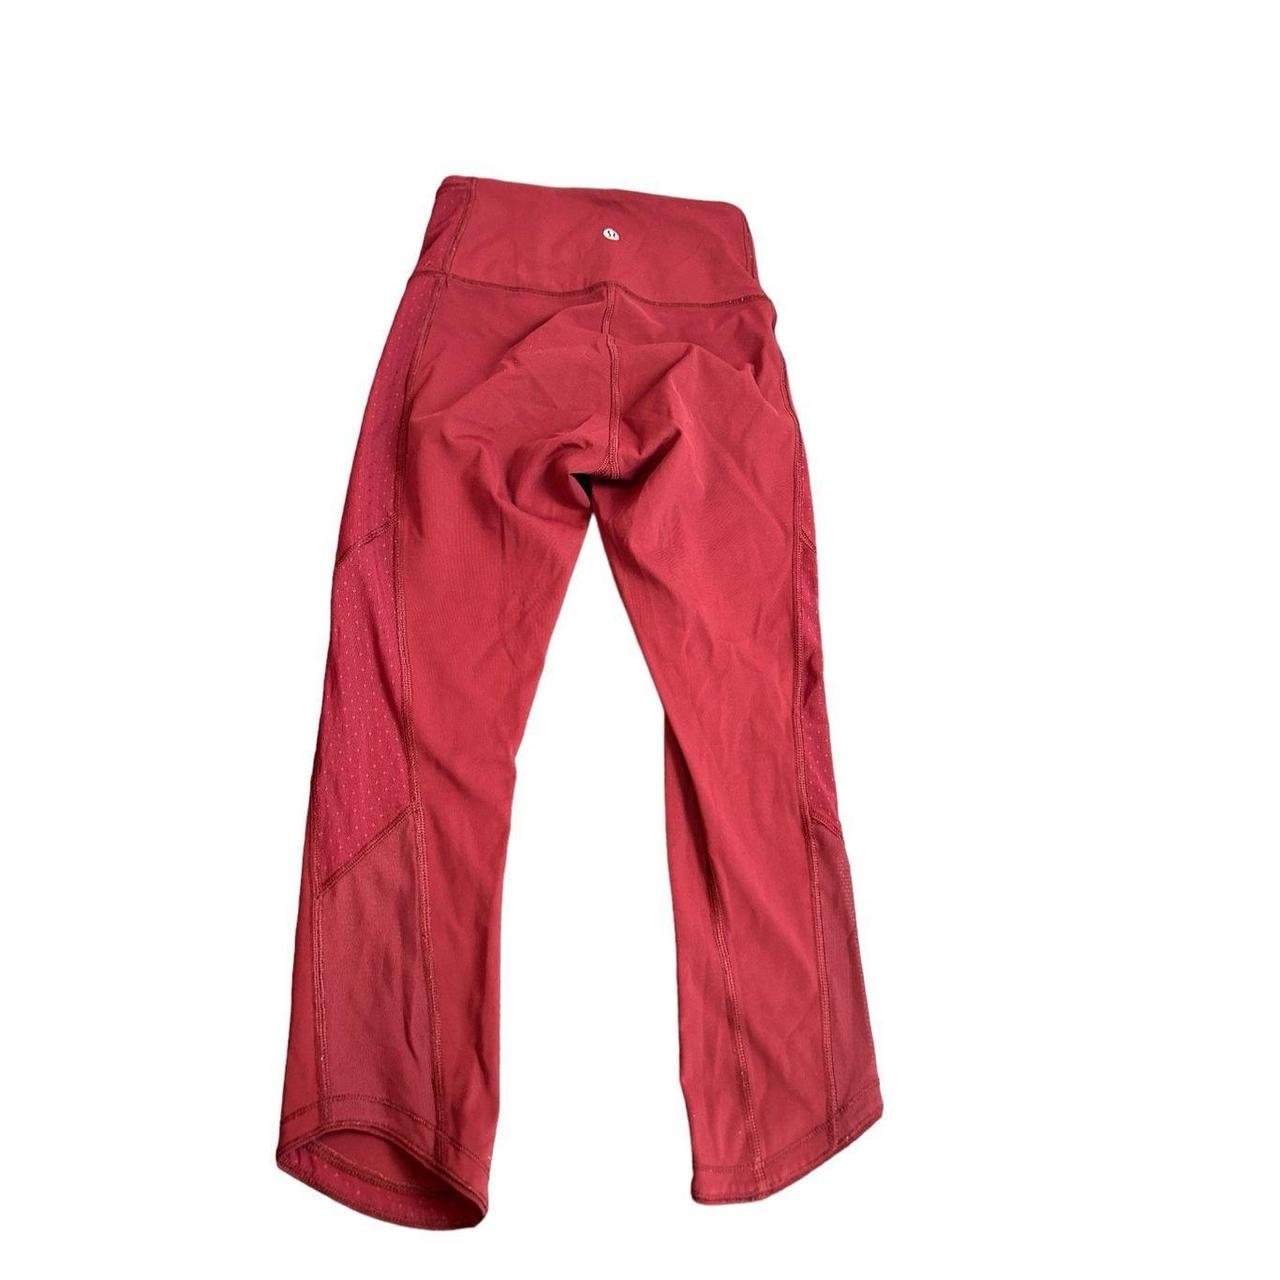 Red legging with black mesh side panel joylab - Depop